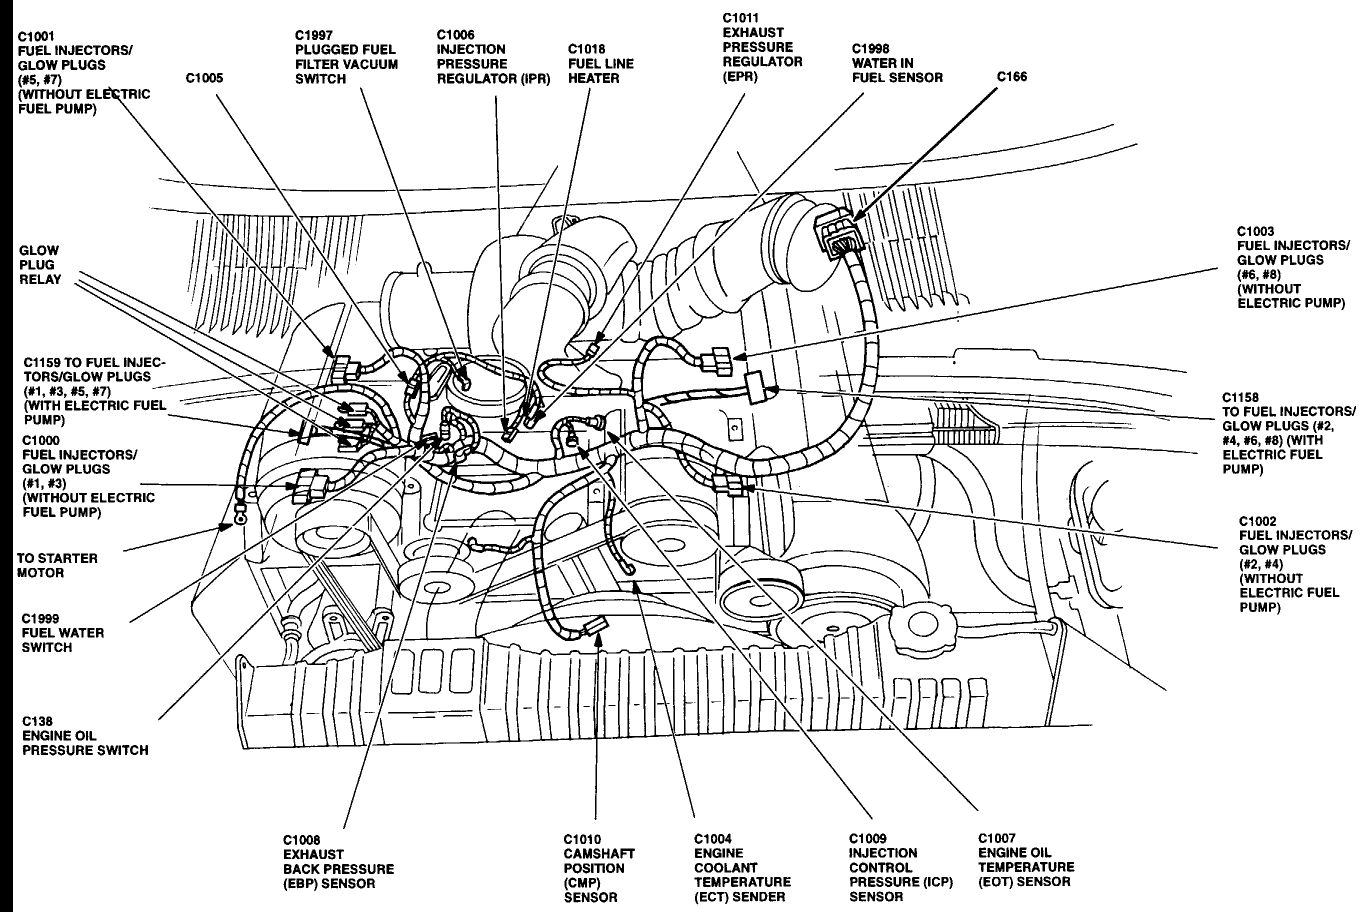 Duramax Lb7 Fuel Line Diagram - Free Diagram For Student